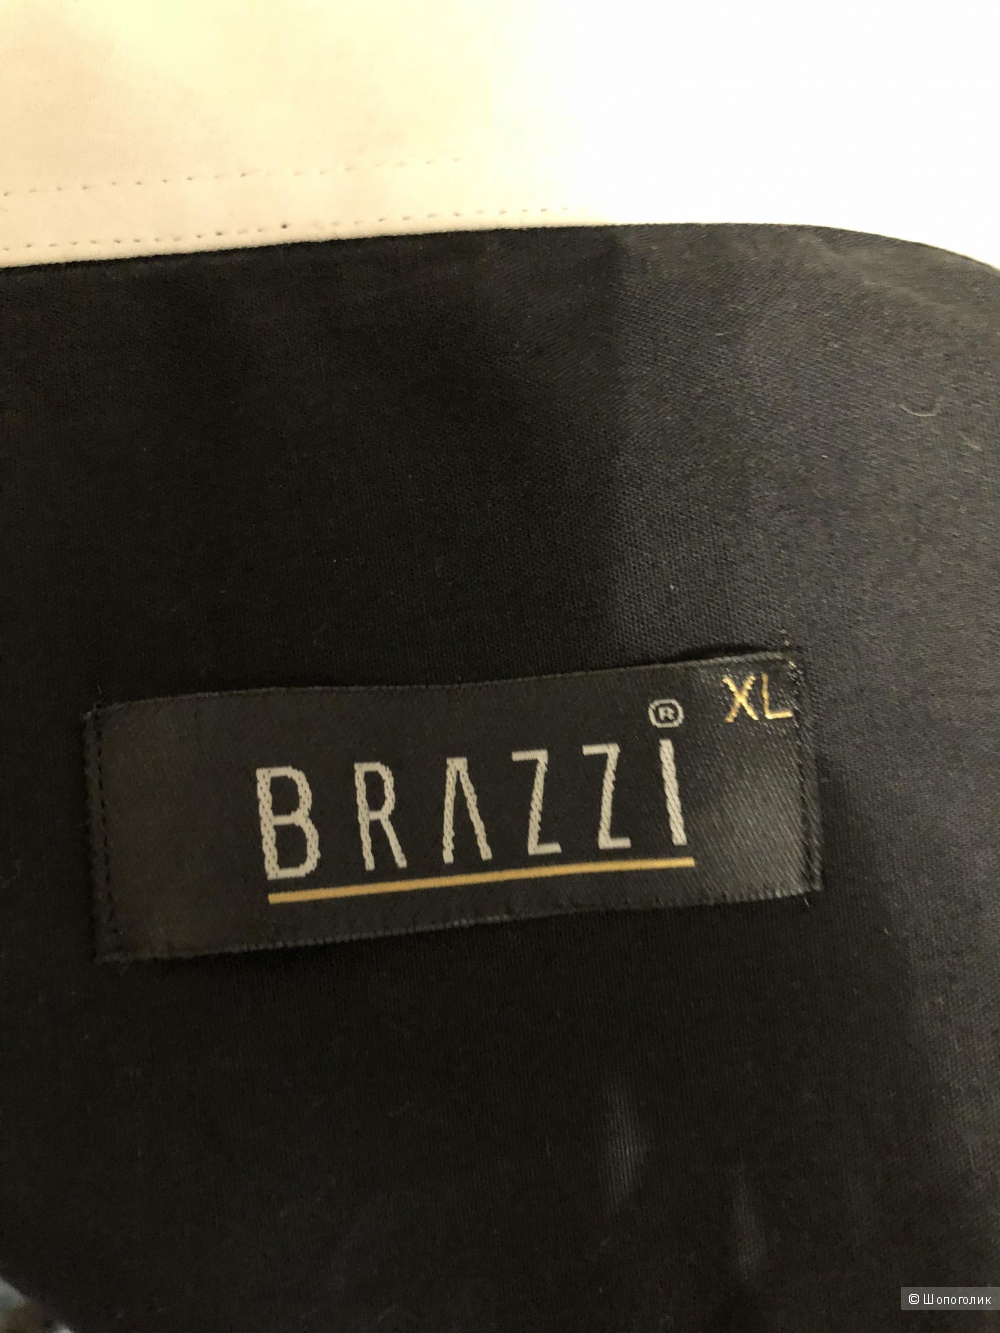 Рубашка Brazzi, размер XL